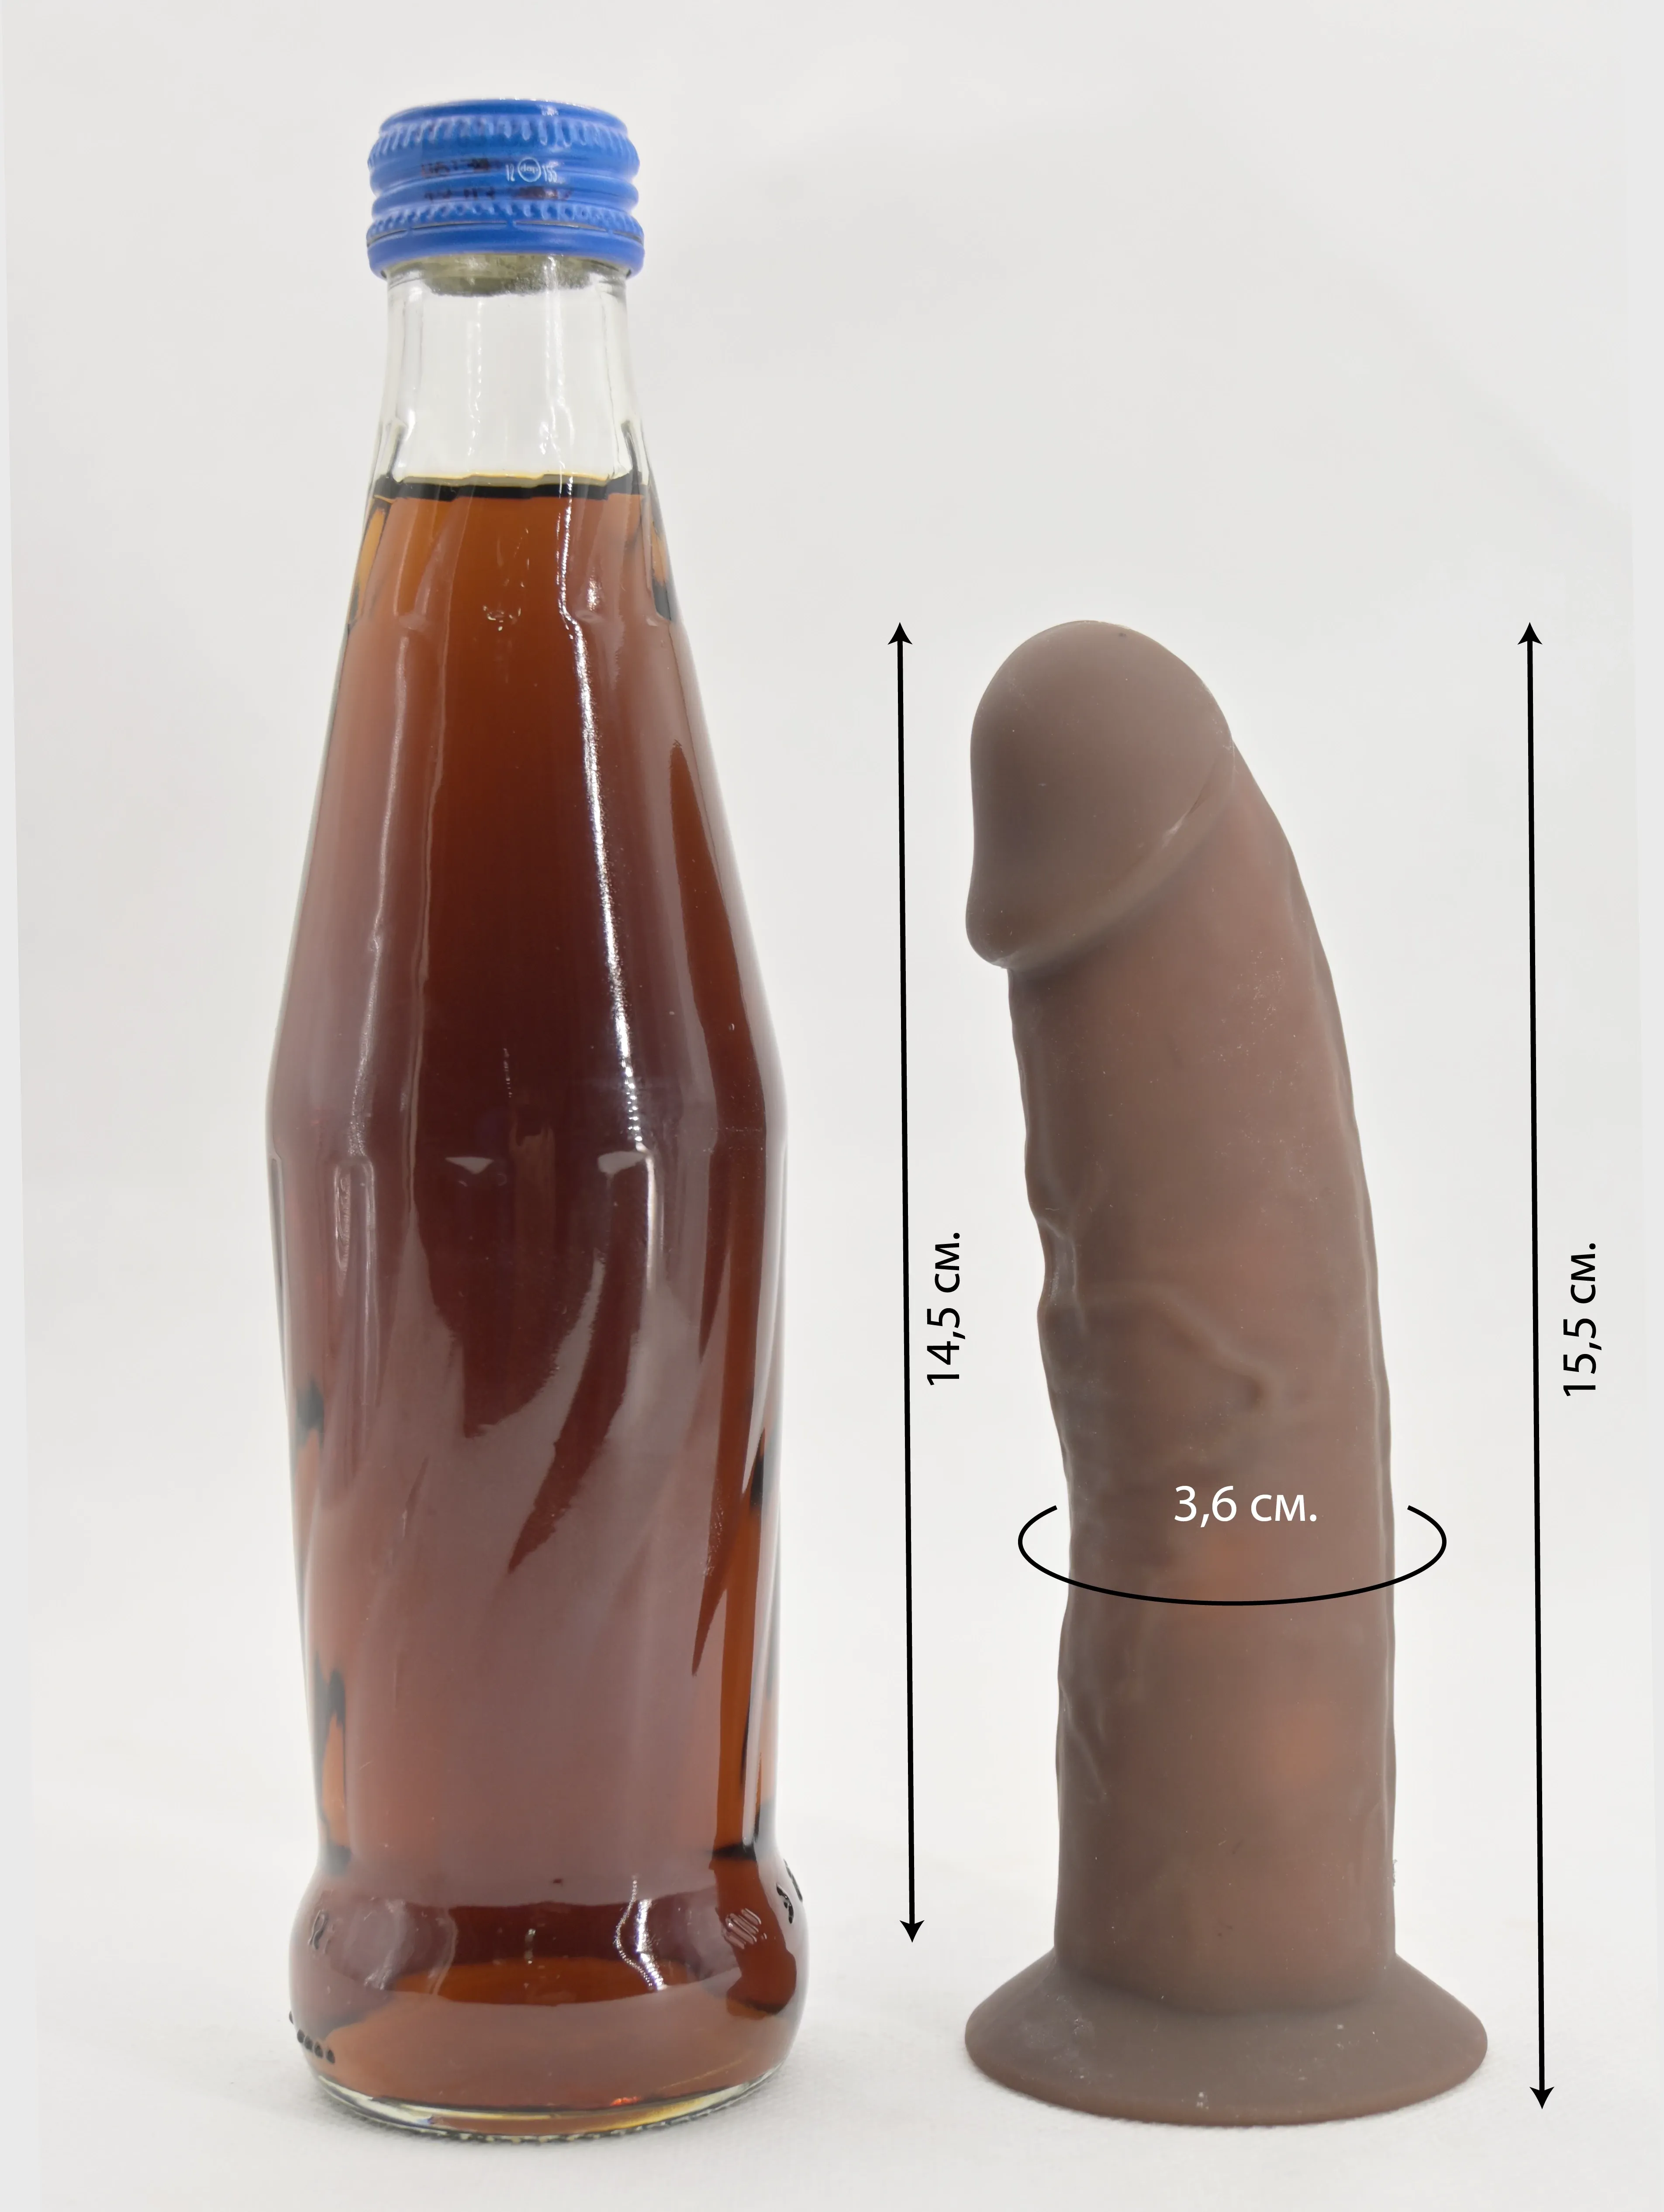 Размеры Realrock Silicone Dildo и сравнение с бутылкой колы